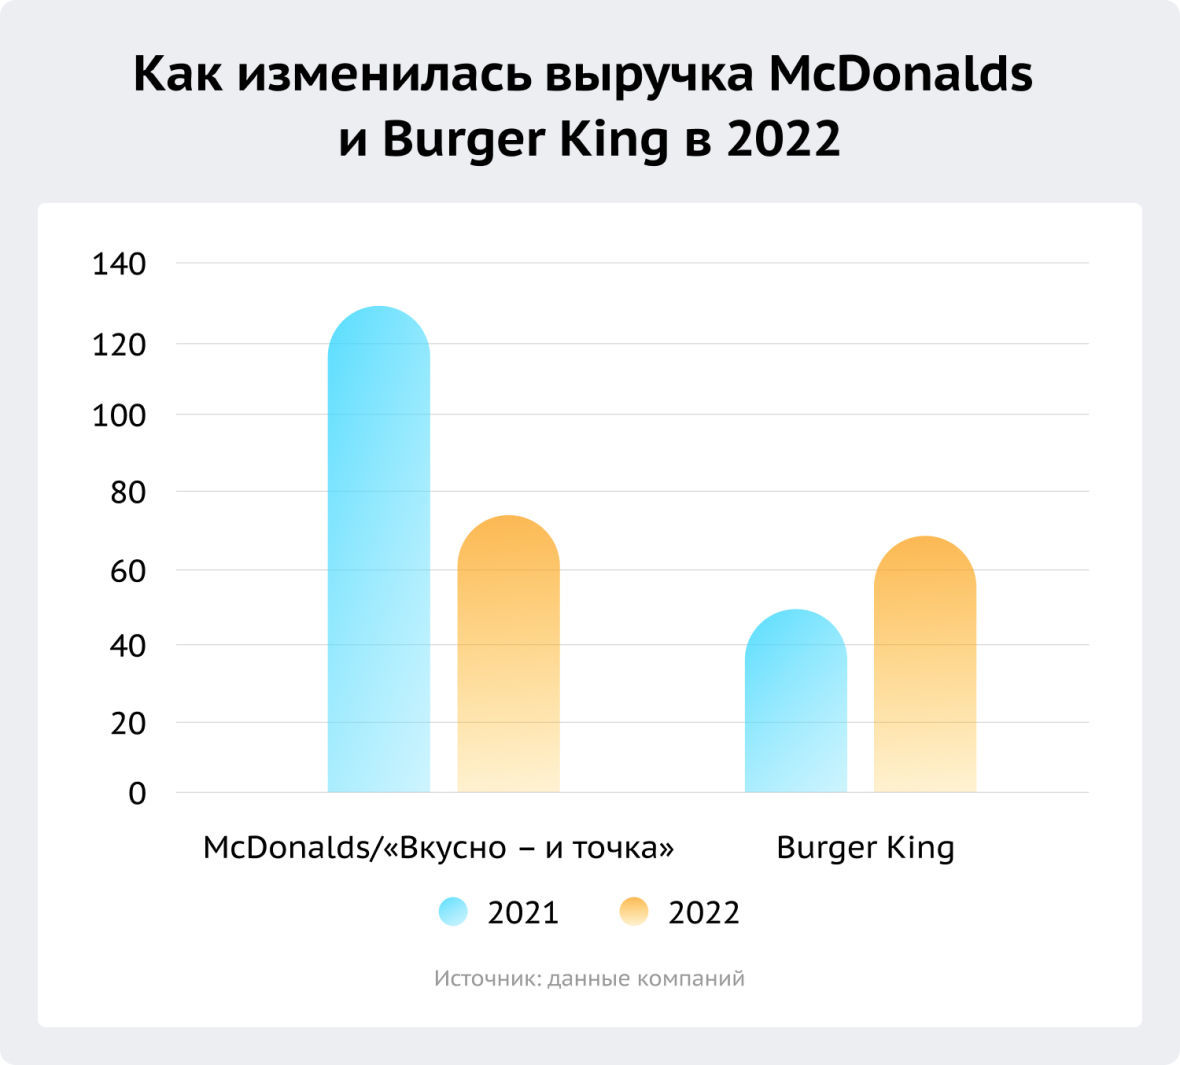 как изменилась выручка McDonalds (вкусно и точка) и Burger King в 2022 году